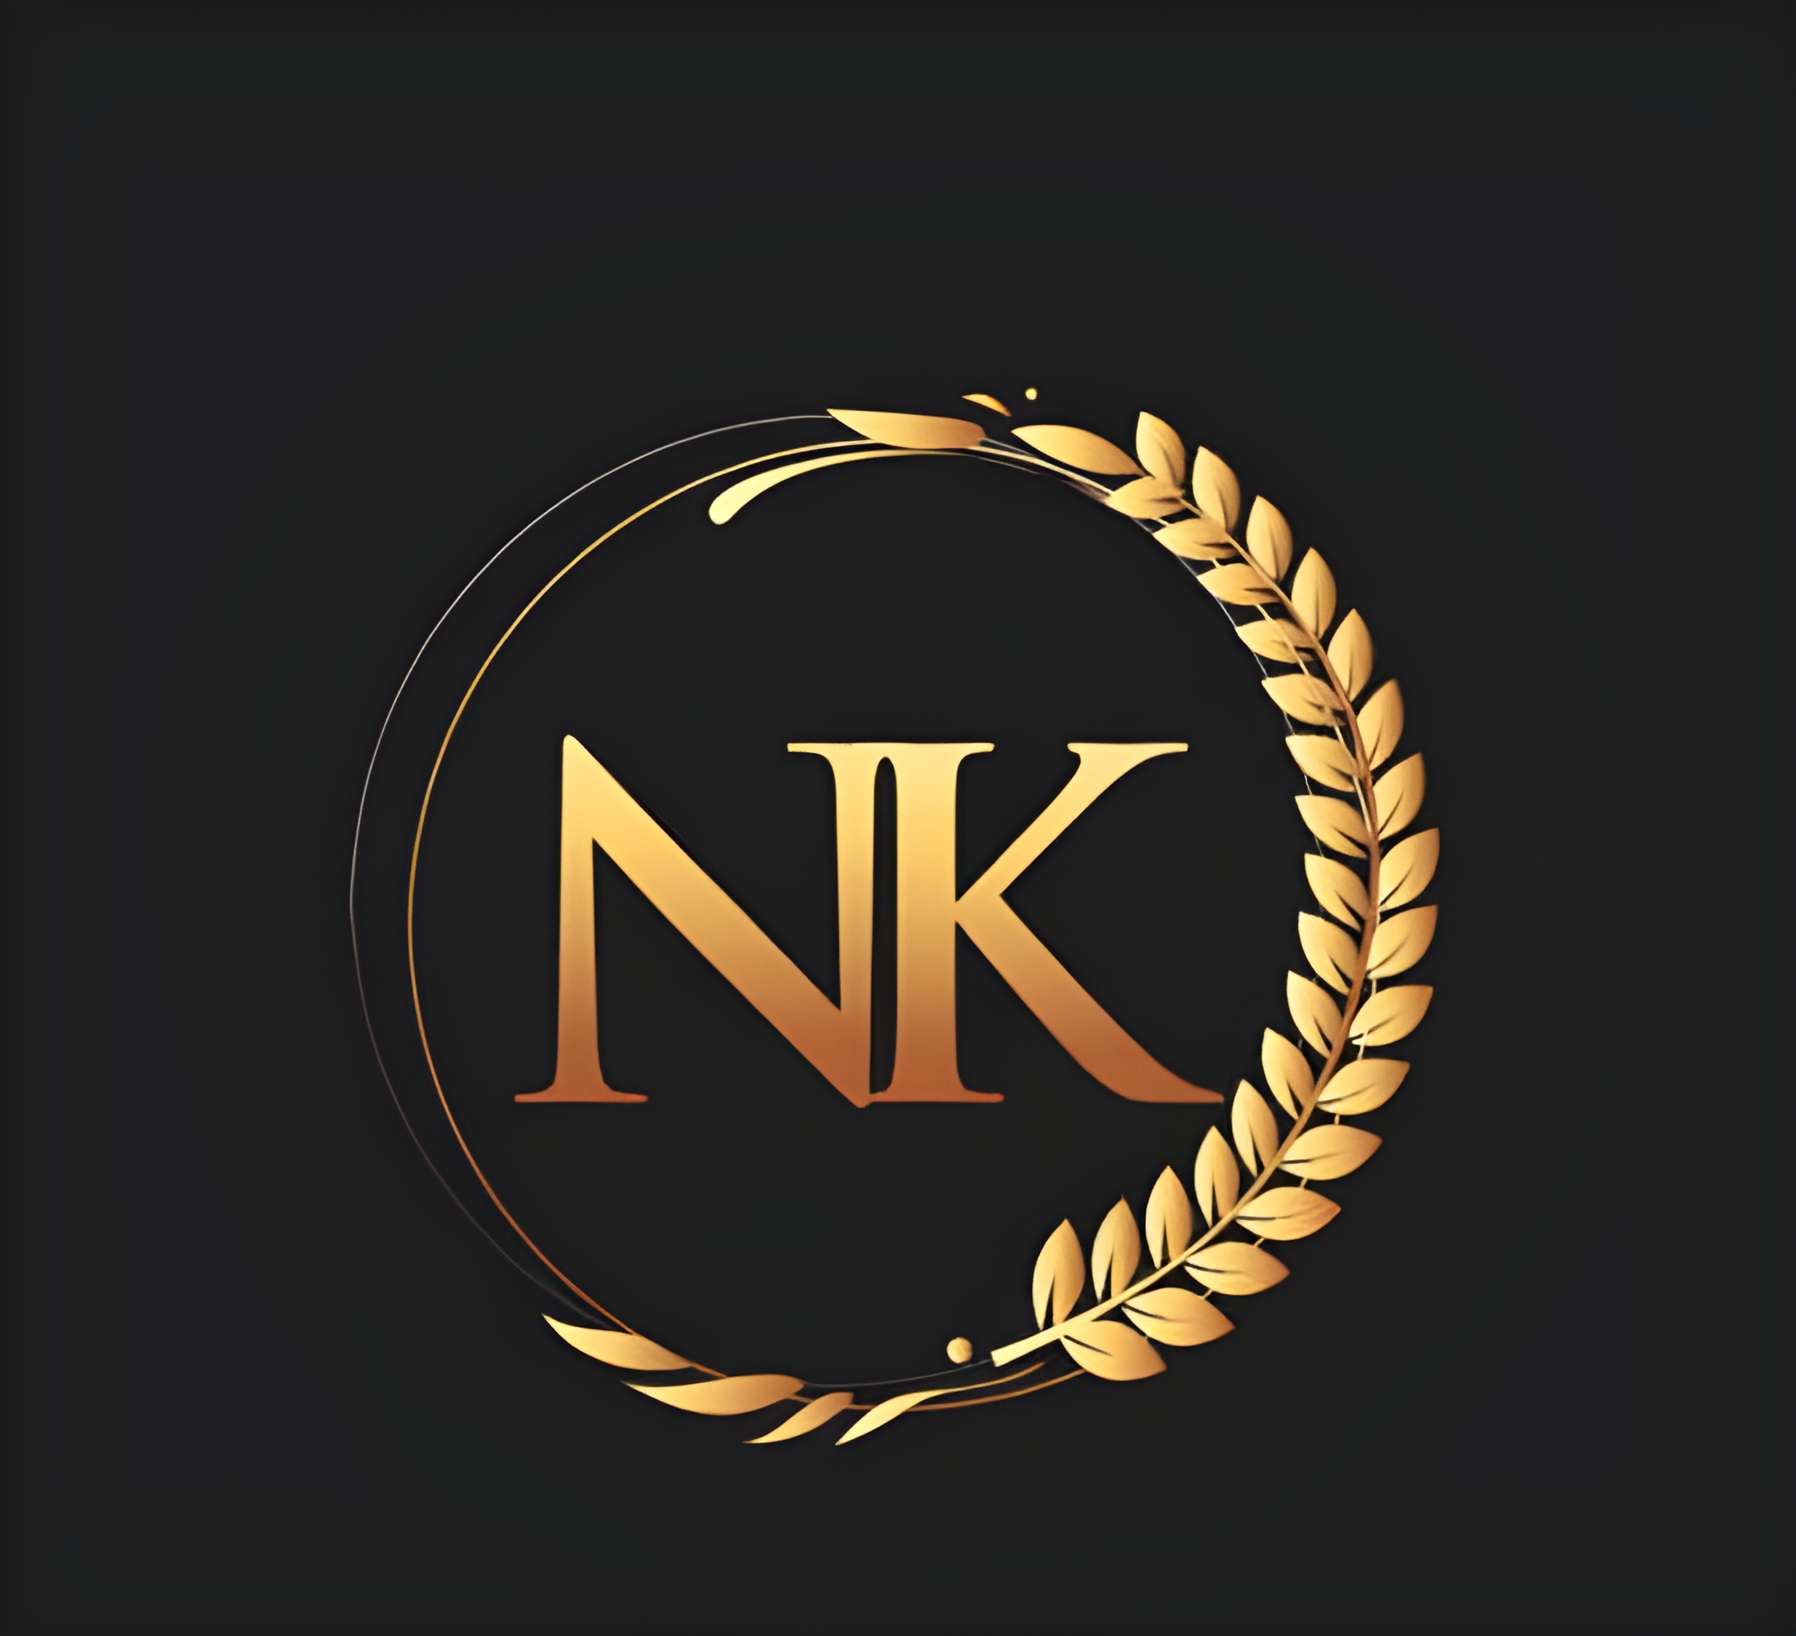 N.k Name - letter n k